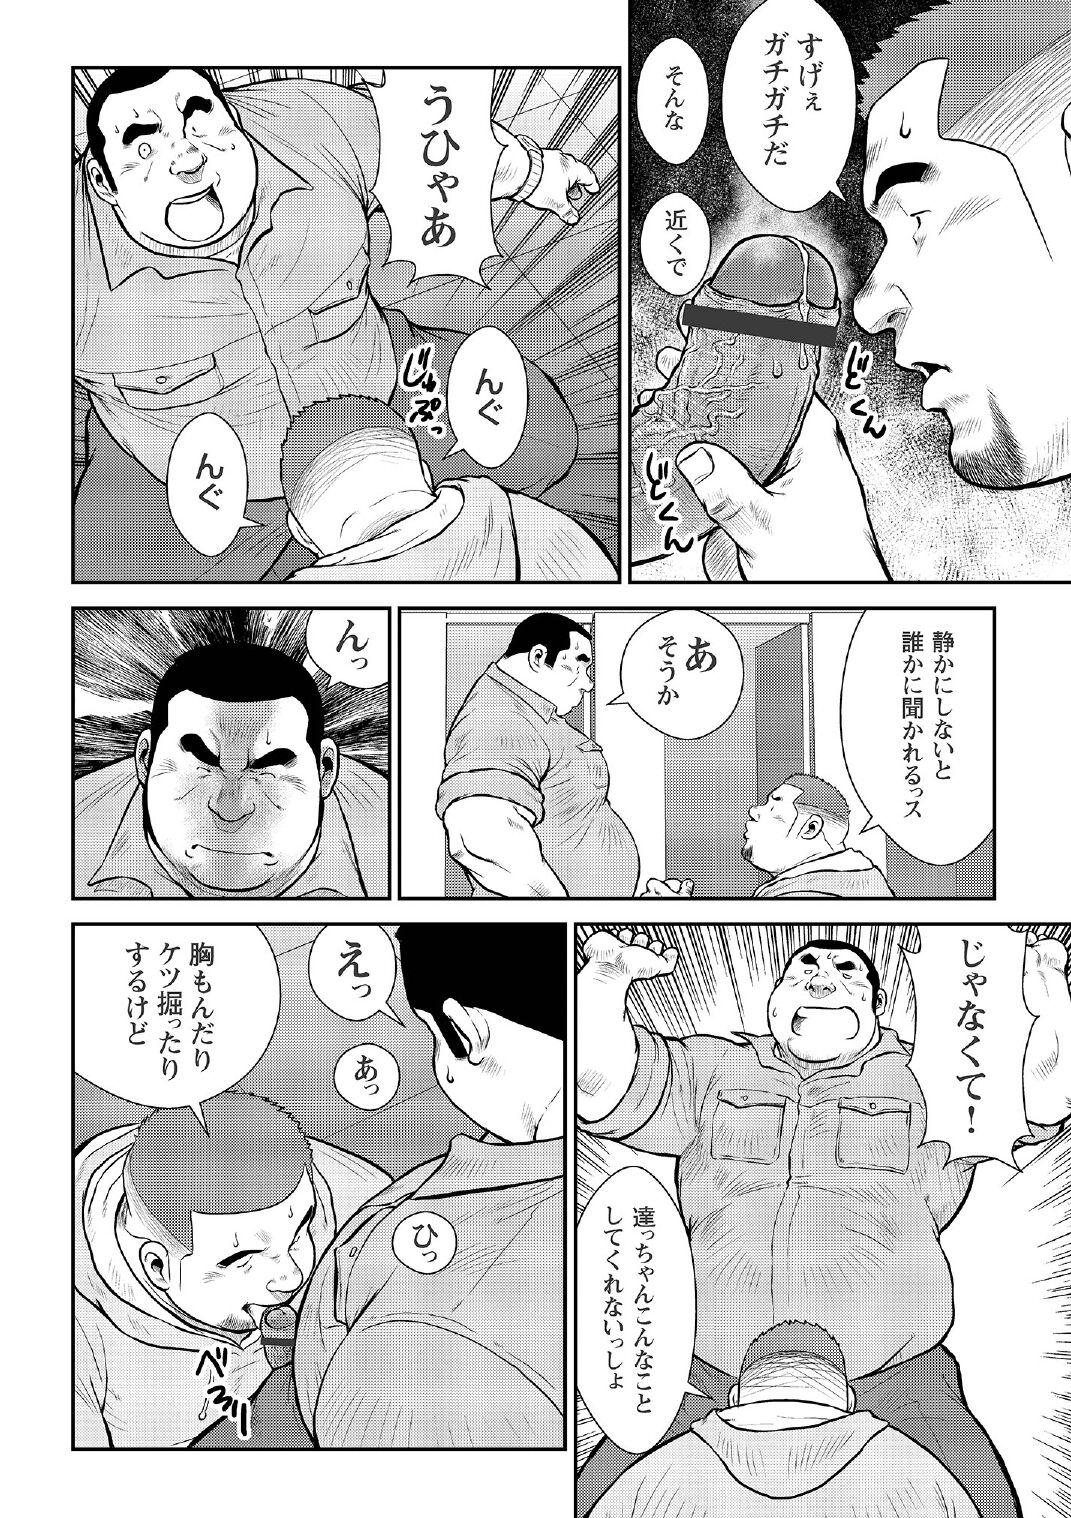 [Ebisubashi Seizou] Ebisubashi Seizou Tanpen Manga Shuu 2 Fuuun! Danshi Ryou [Bunsatsuban] PART 2 Bousou Hantou Taifuu Zensen Ch. 1 + Ch. 2 [Digital] 31